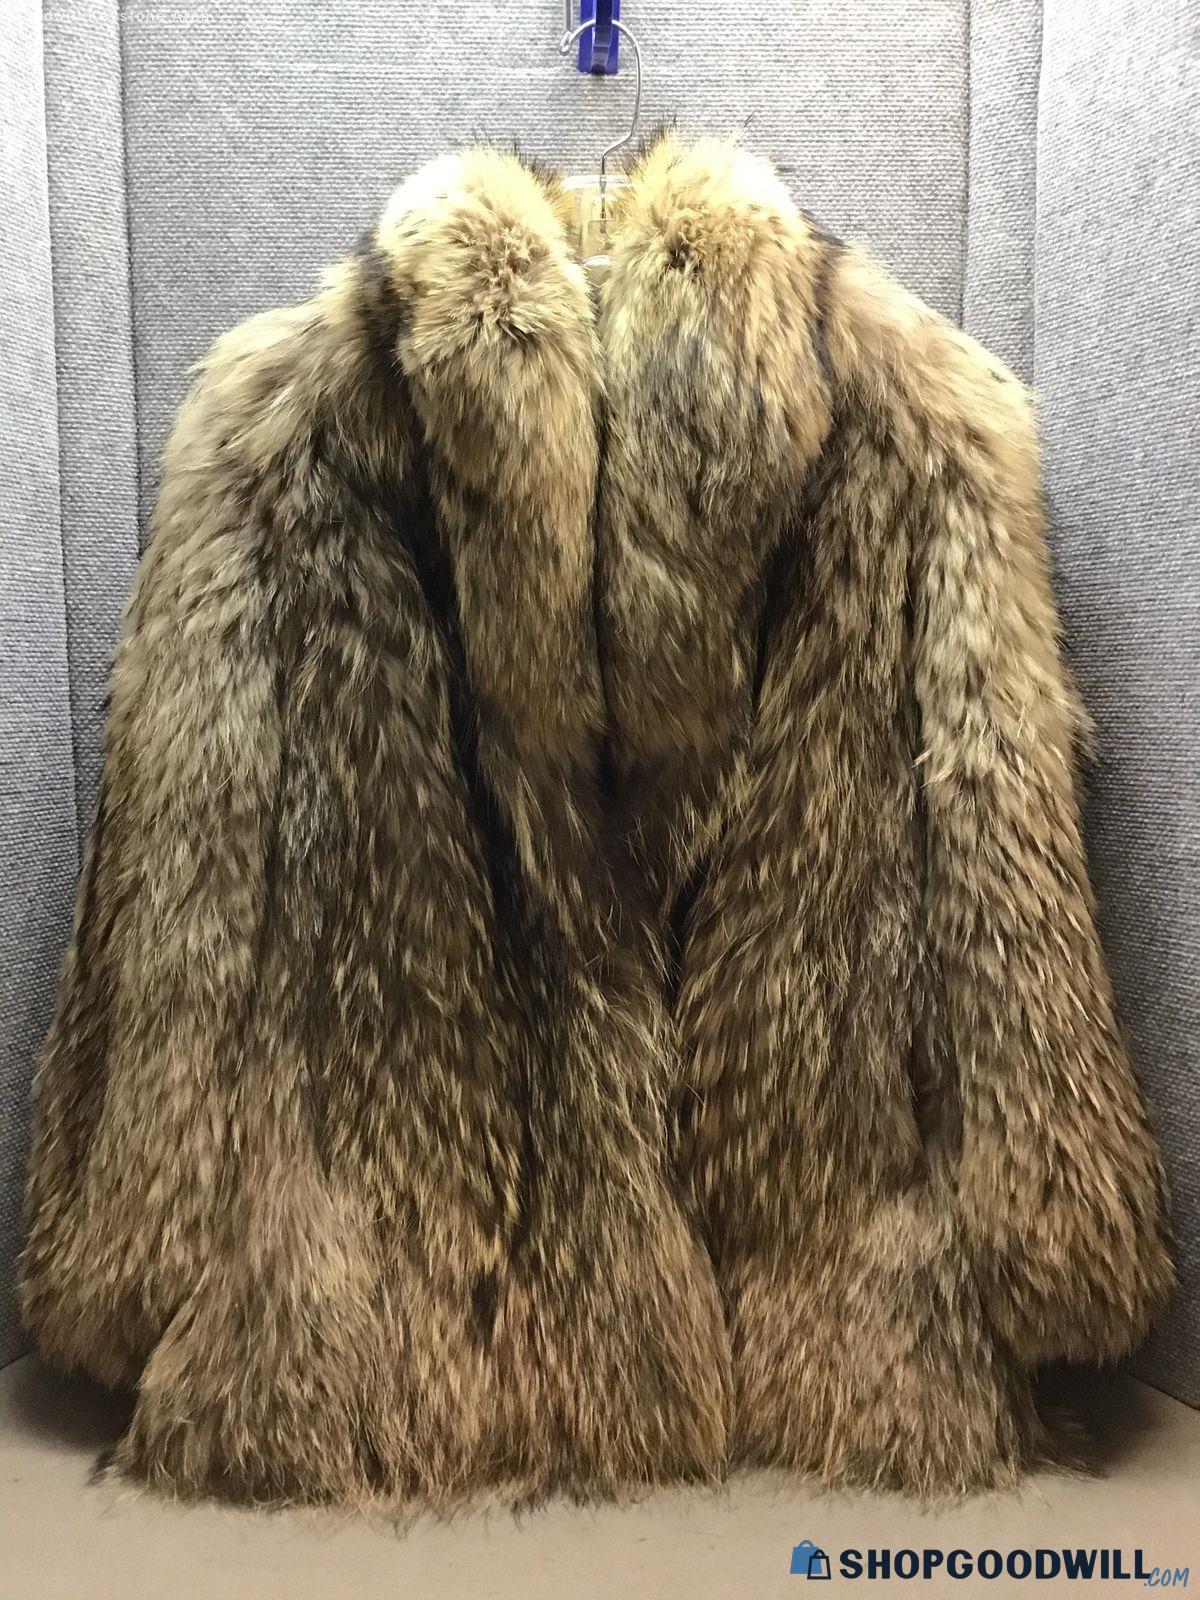 Pollack Furs Lds Tan Fox Fur Coat - shopgoodwill.com